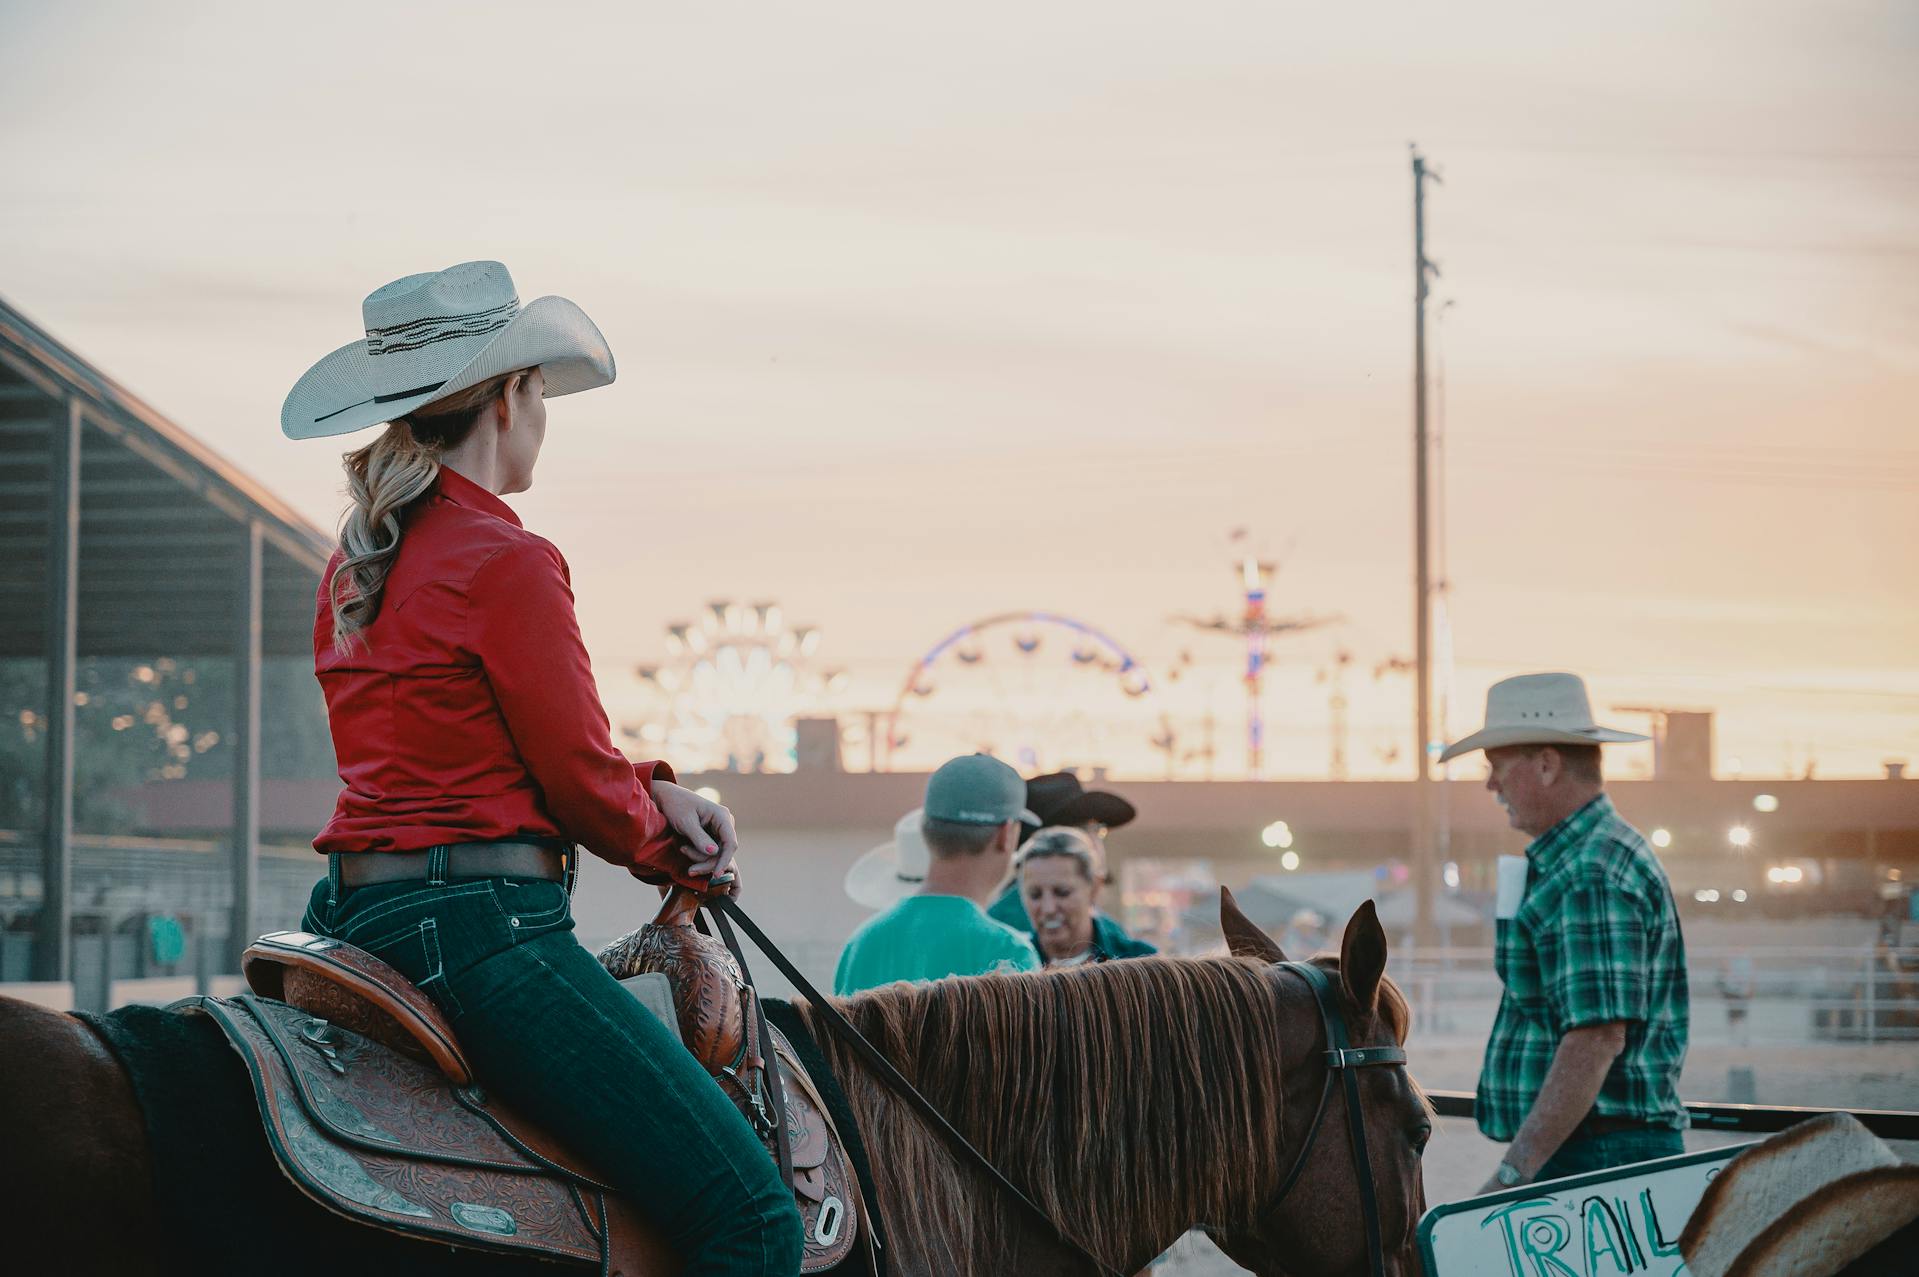 Rodeo Finals – Wild West in the Modern Era